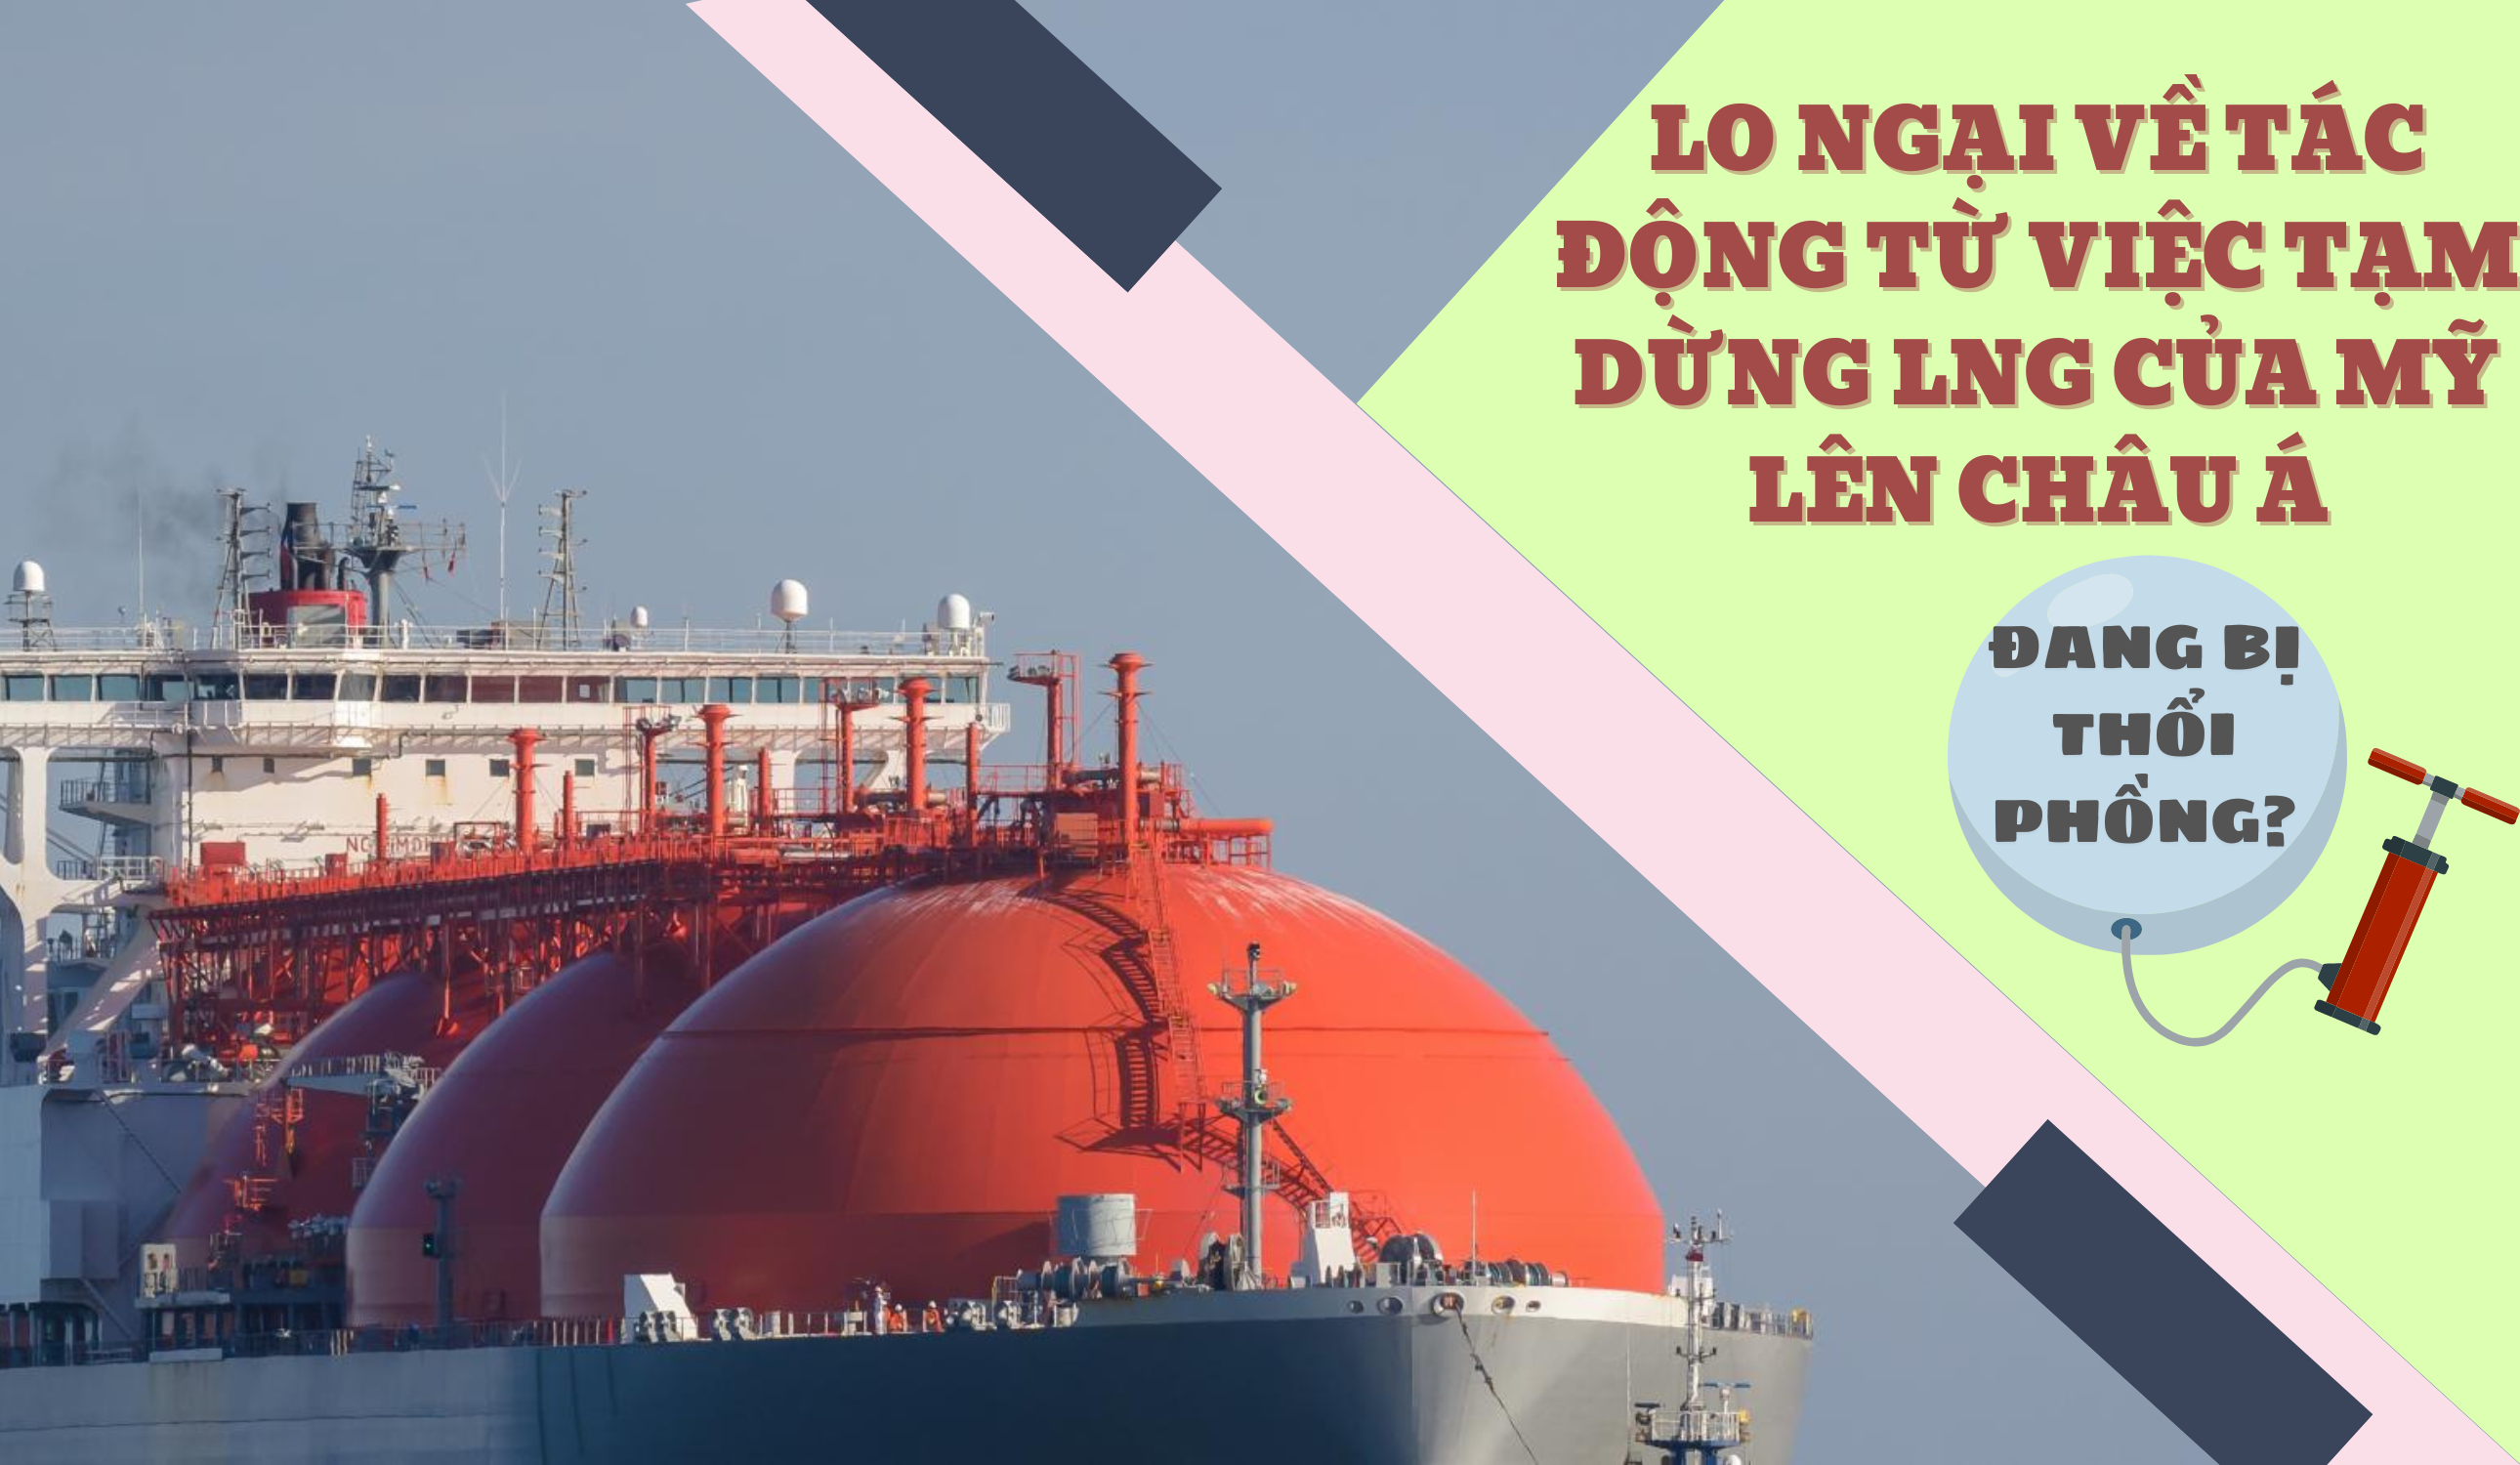 Lo ngại về tác động của việc tạm dừng LNG của Mỹ lên châu Á đang bị thổi phồng?